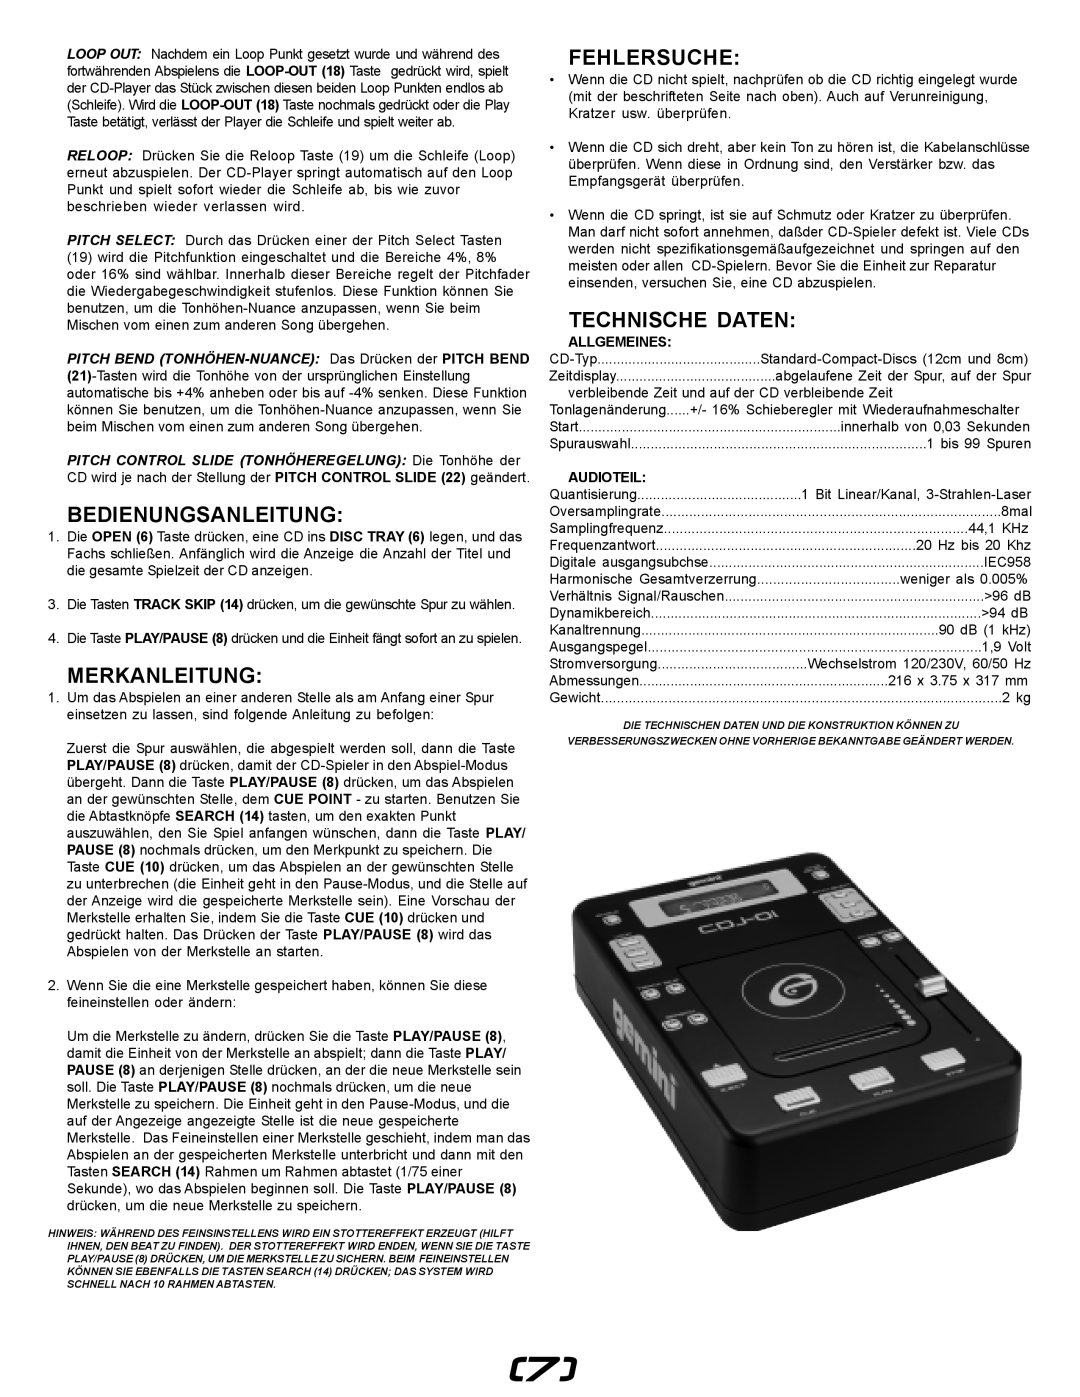 Gemini CDJ-01 manual Bedienungsanleitung, Merkanleitung, Fehlersuche, Technische Daten, Allgemeines, Audioteil 